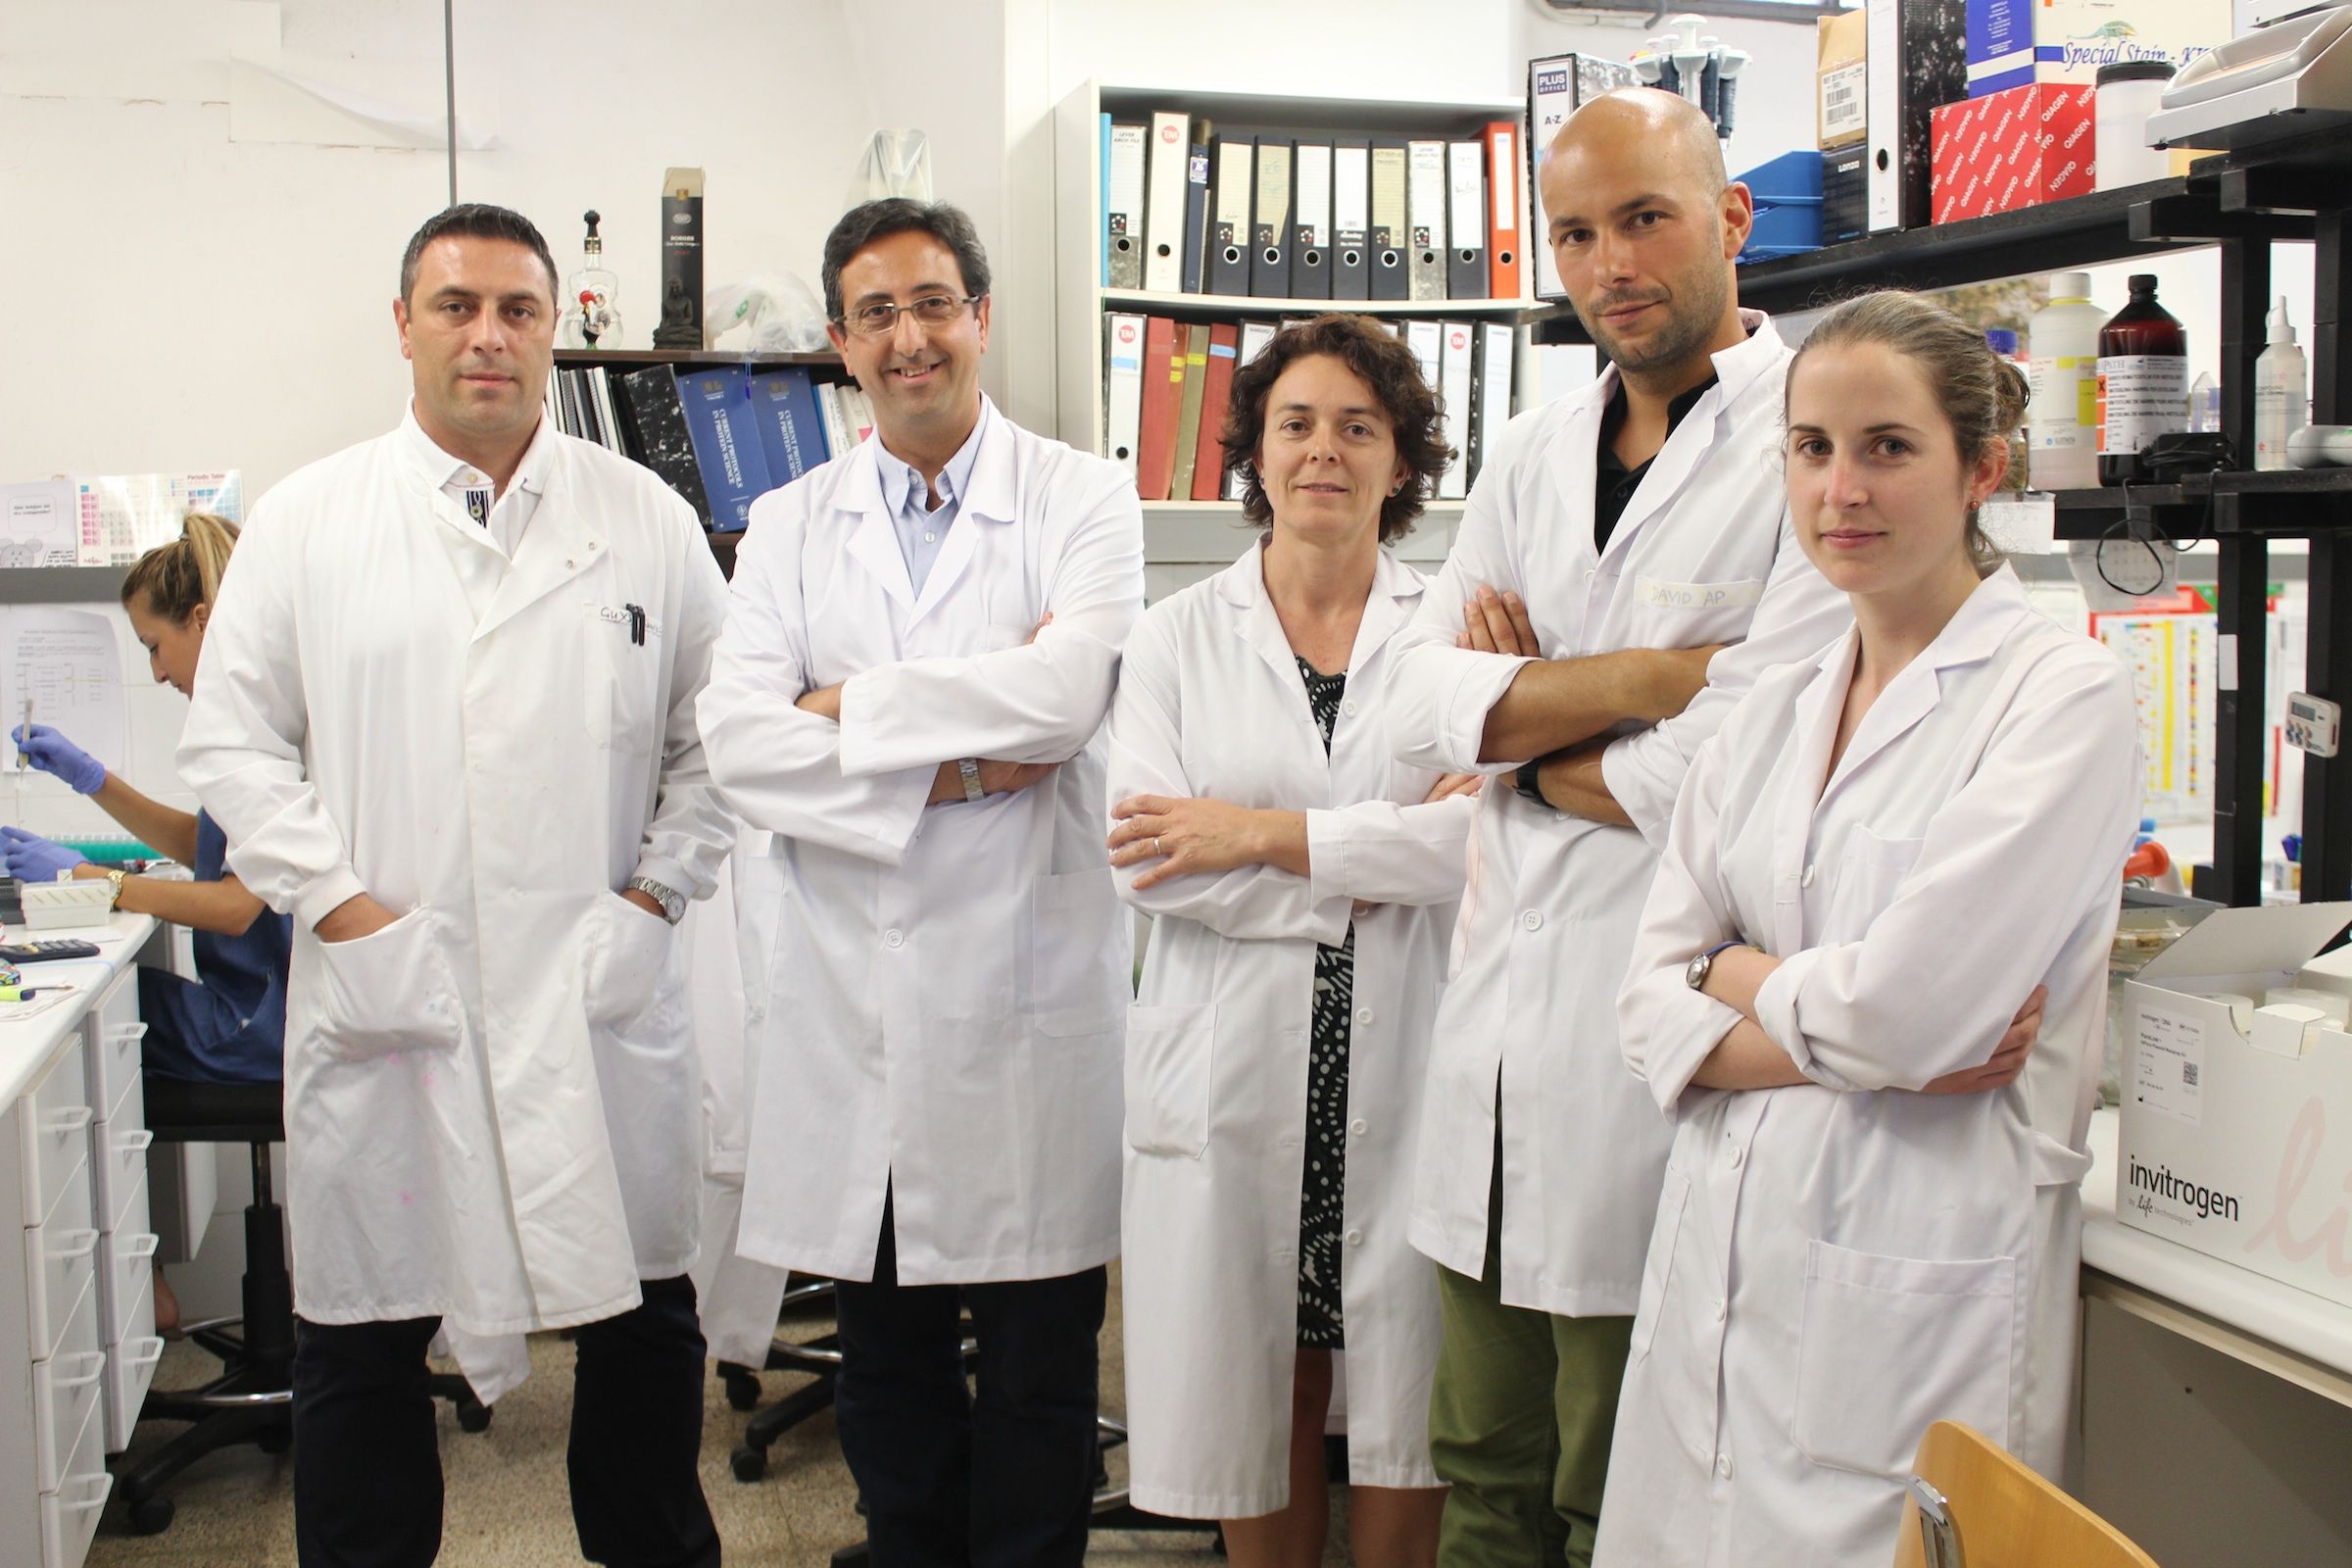 Los investigadores de la CEU-UCH Sauro, Soria, García Esparza, Zipancic y Paradells, miembros del grupo que lidera el profesor Soria.